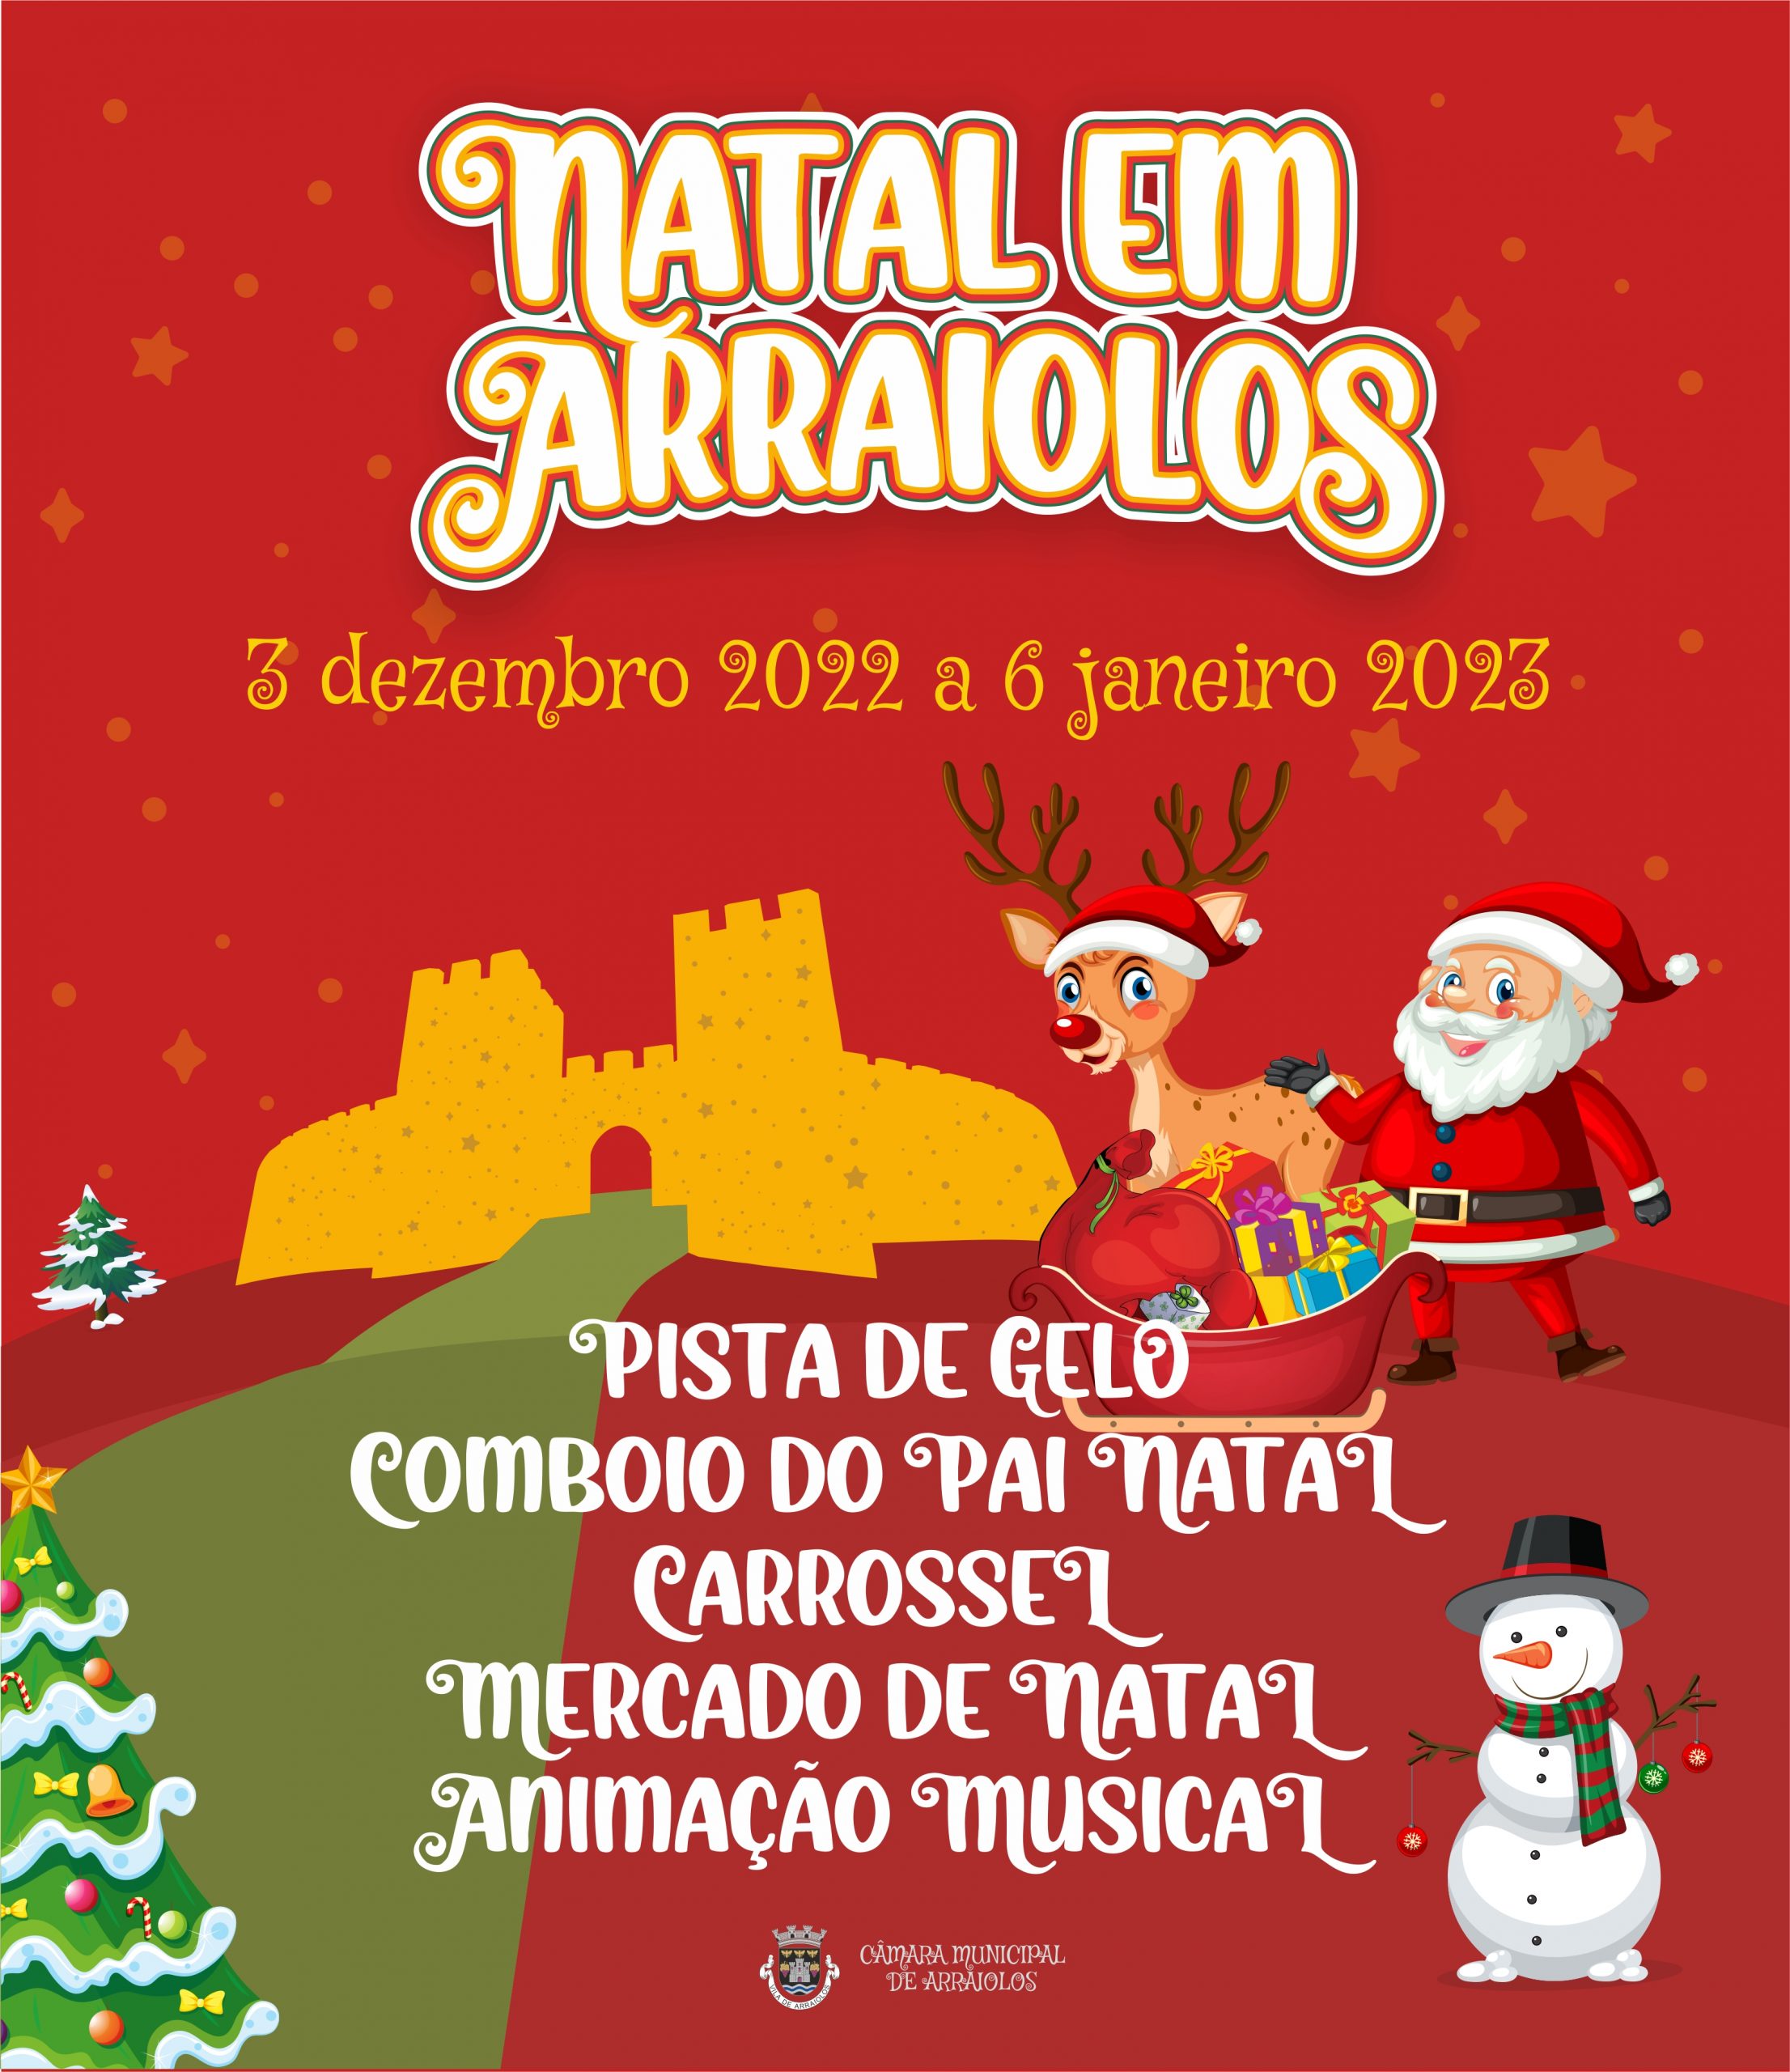 (Português) Natal em Arraiolos